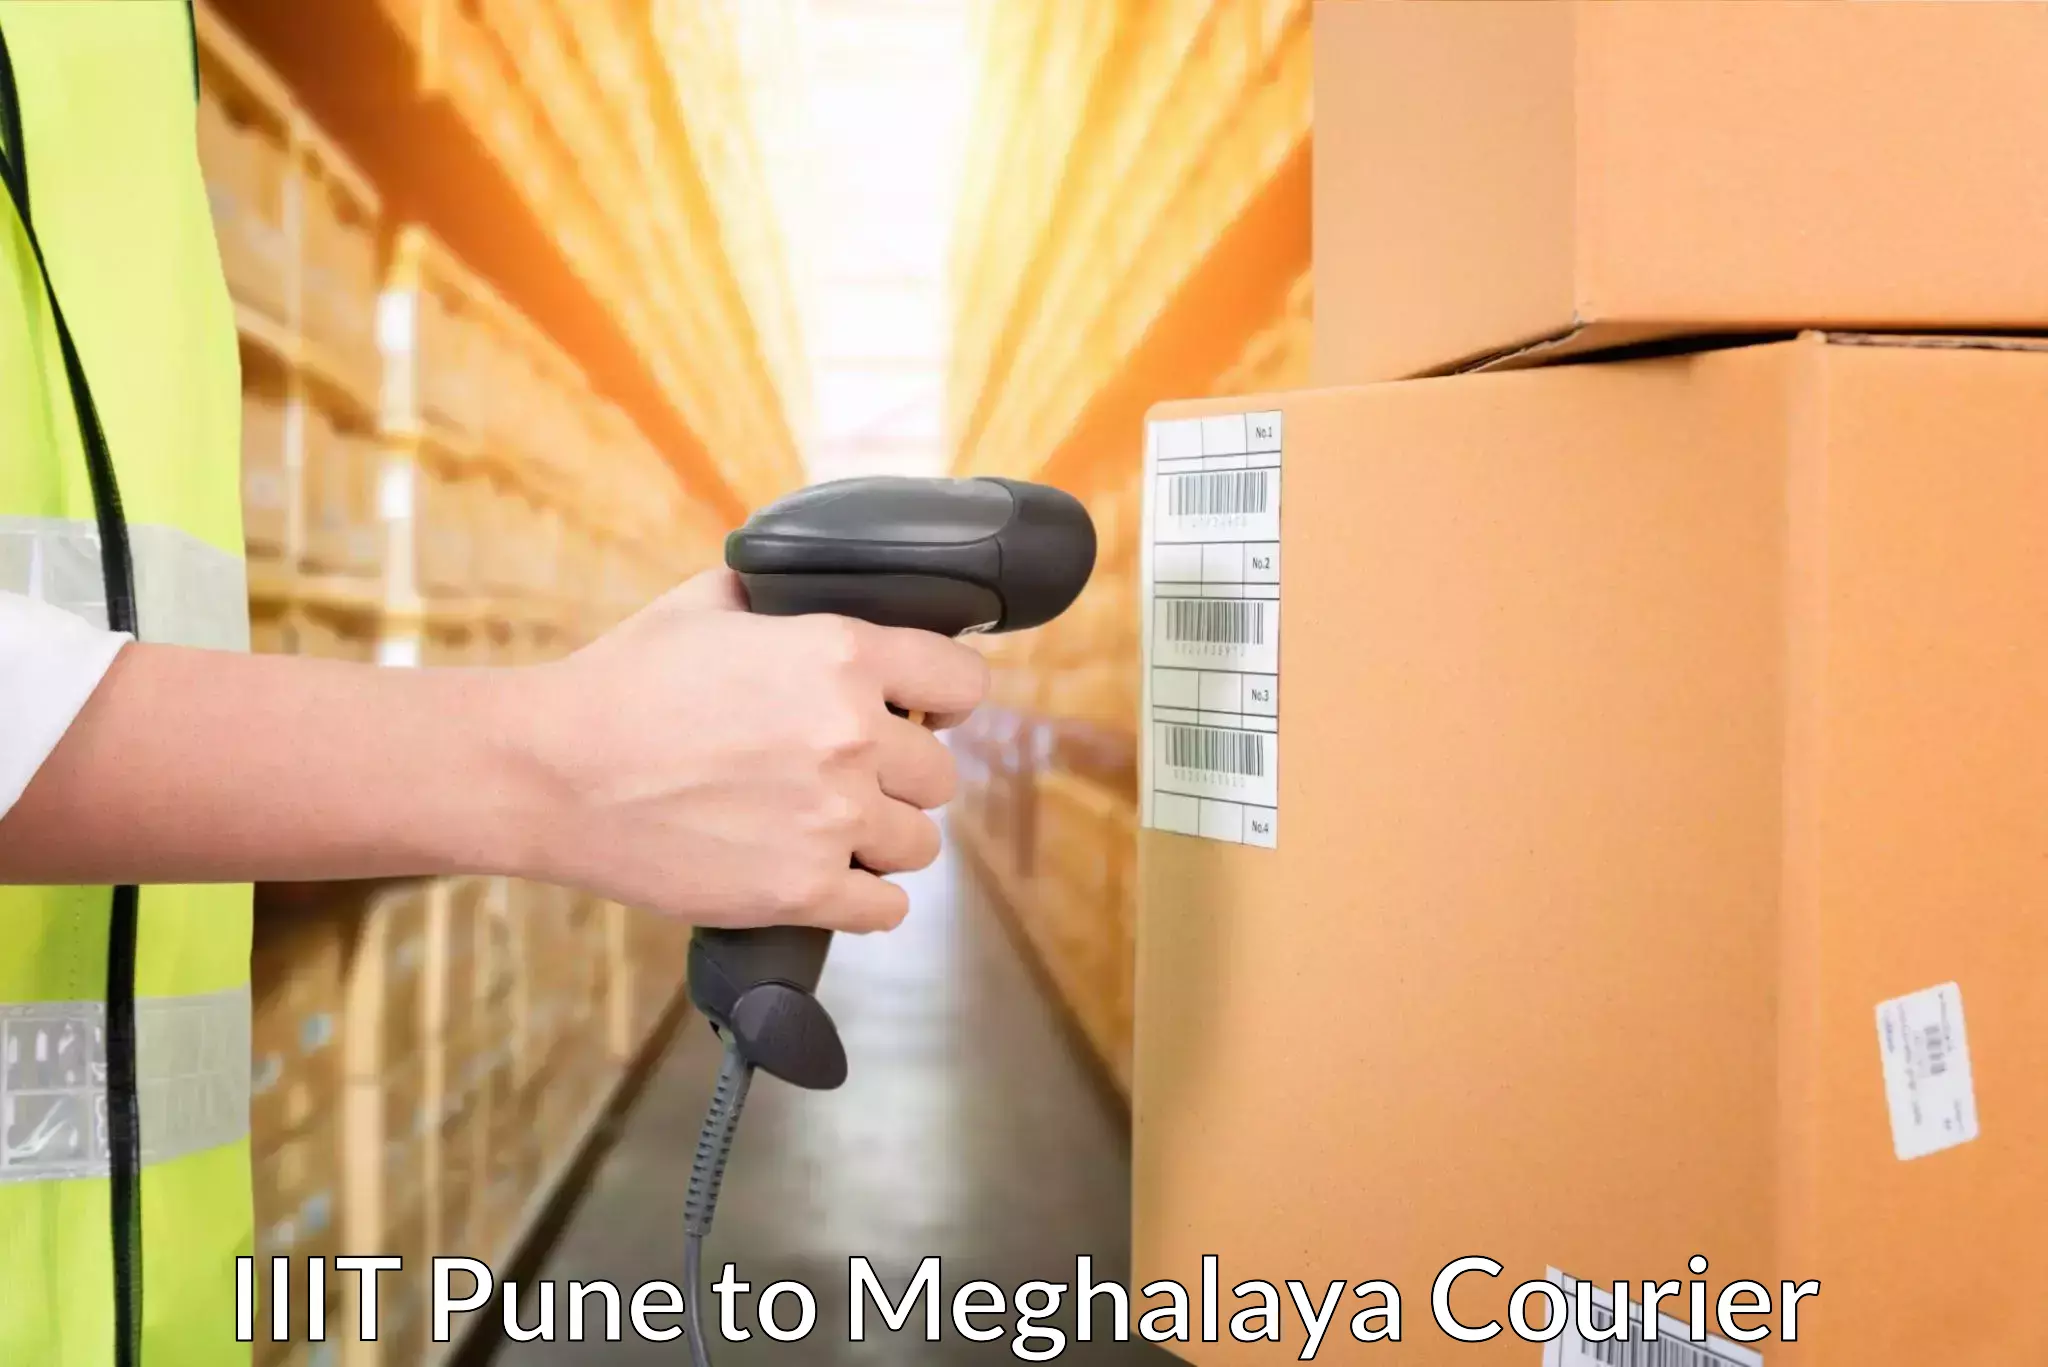 Business shipping needs IIIT Pune to Meghalaya